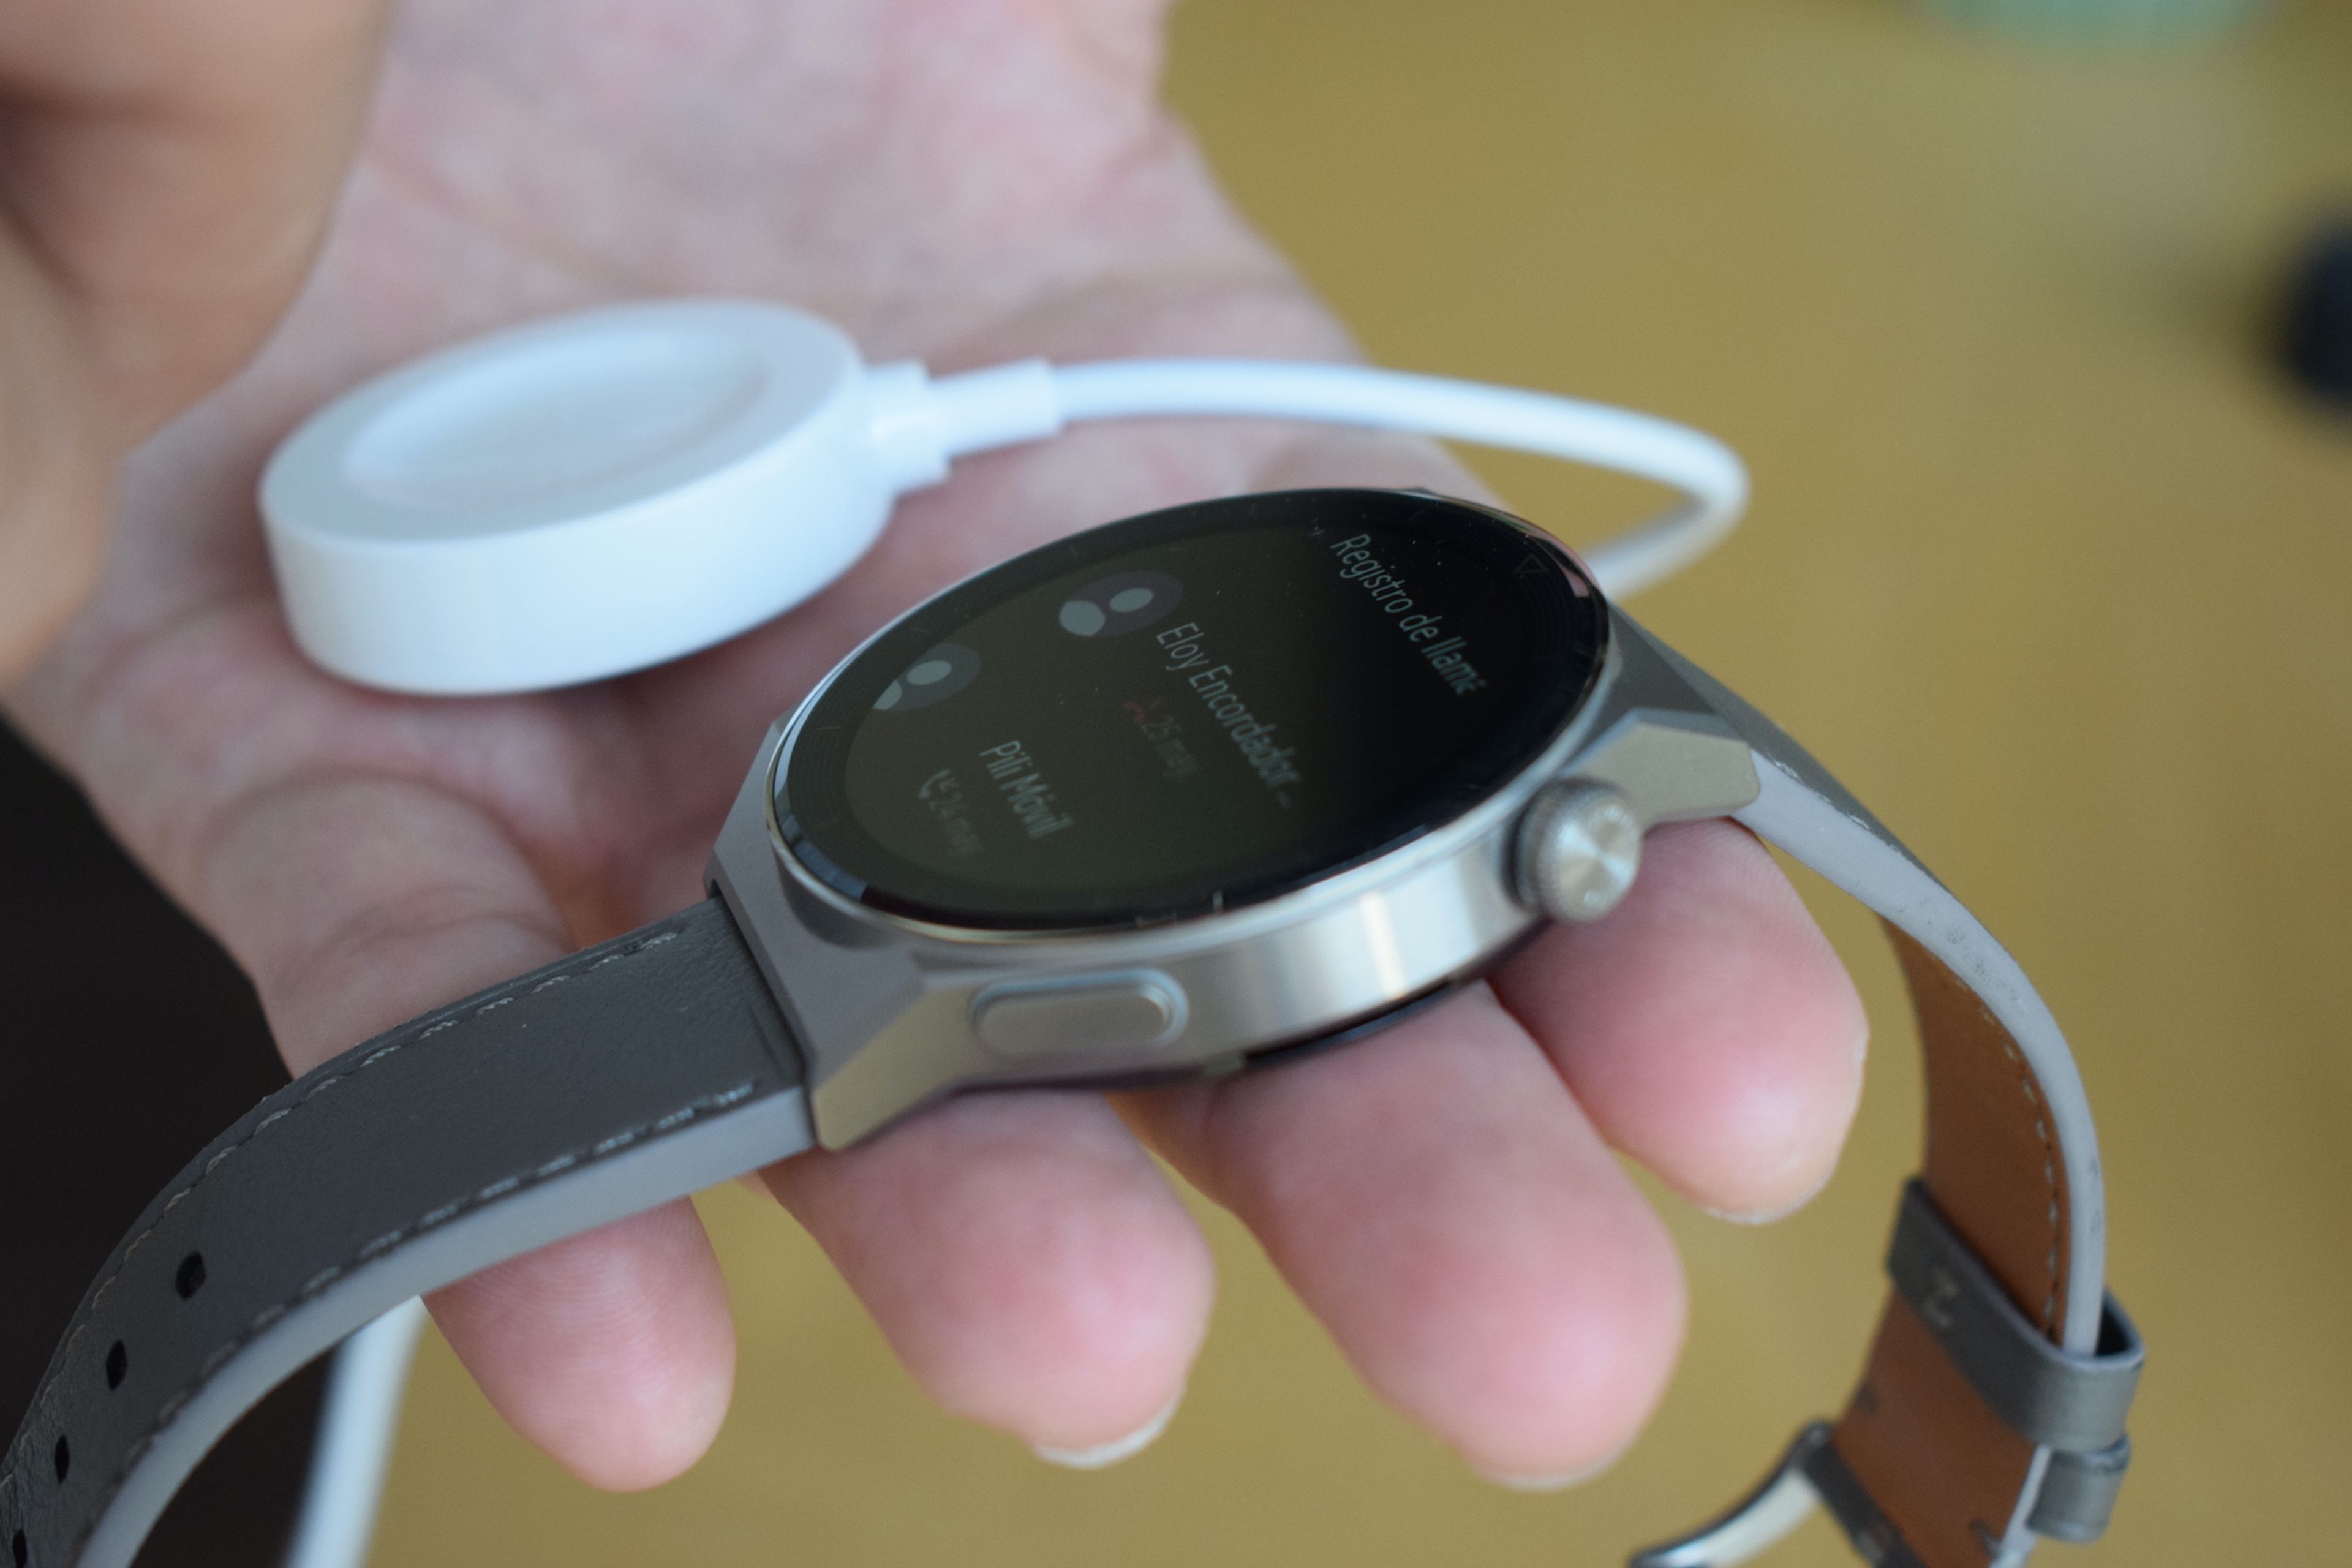 Huawei Watch GT 3 Pro, análisis: review con características, precio y  especificaciones